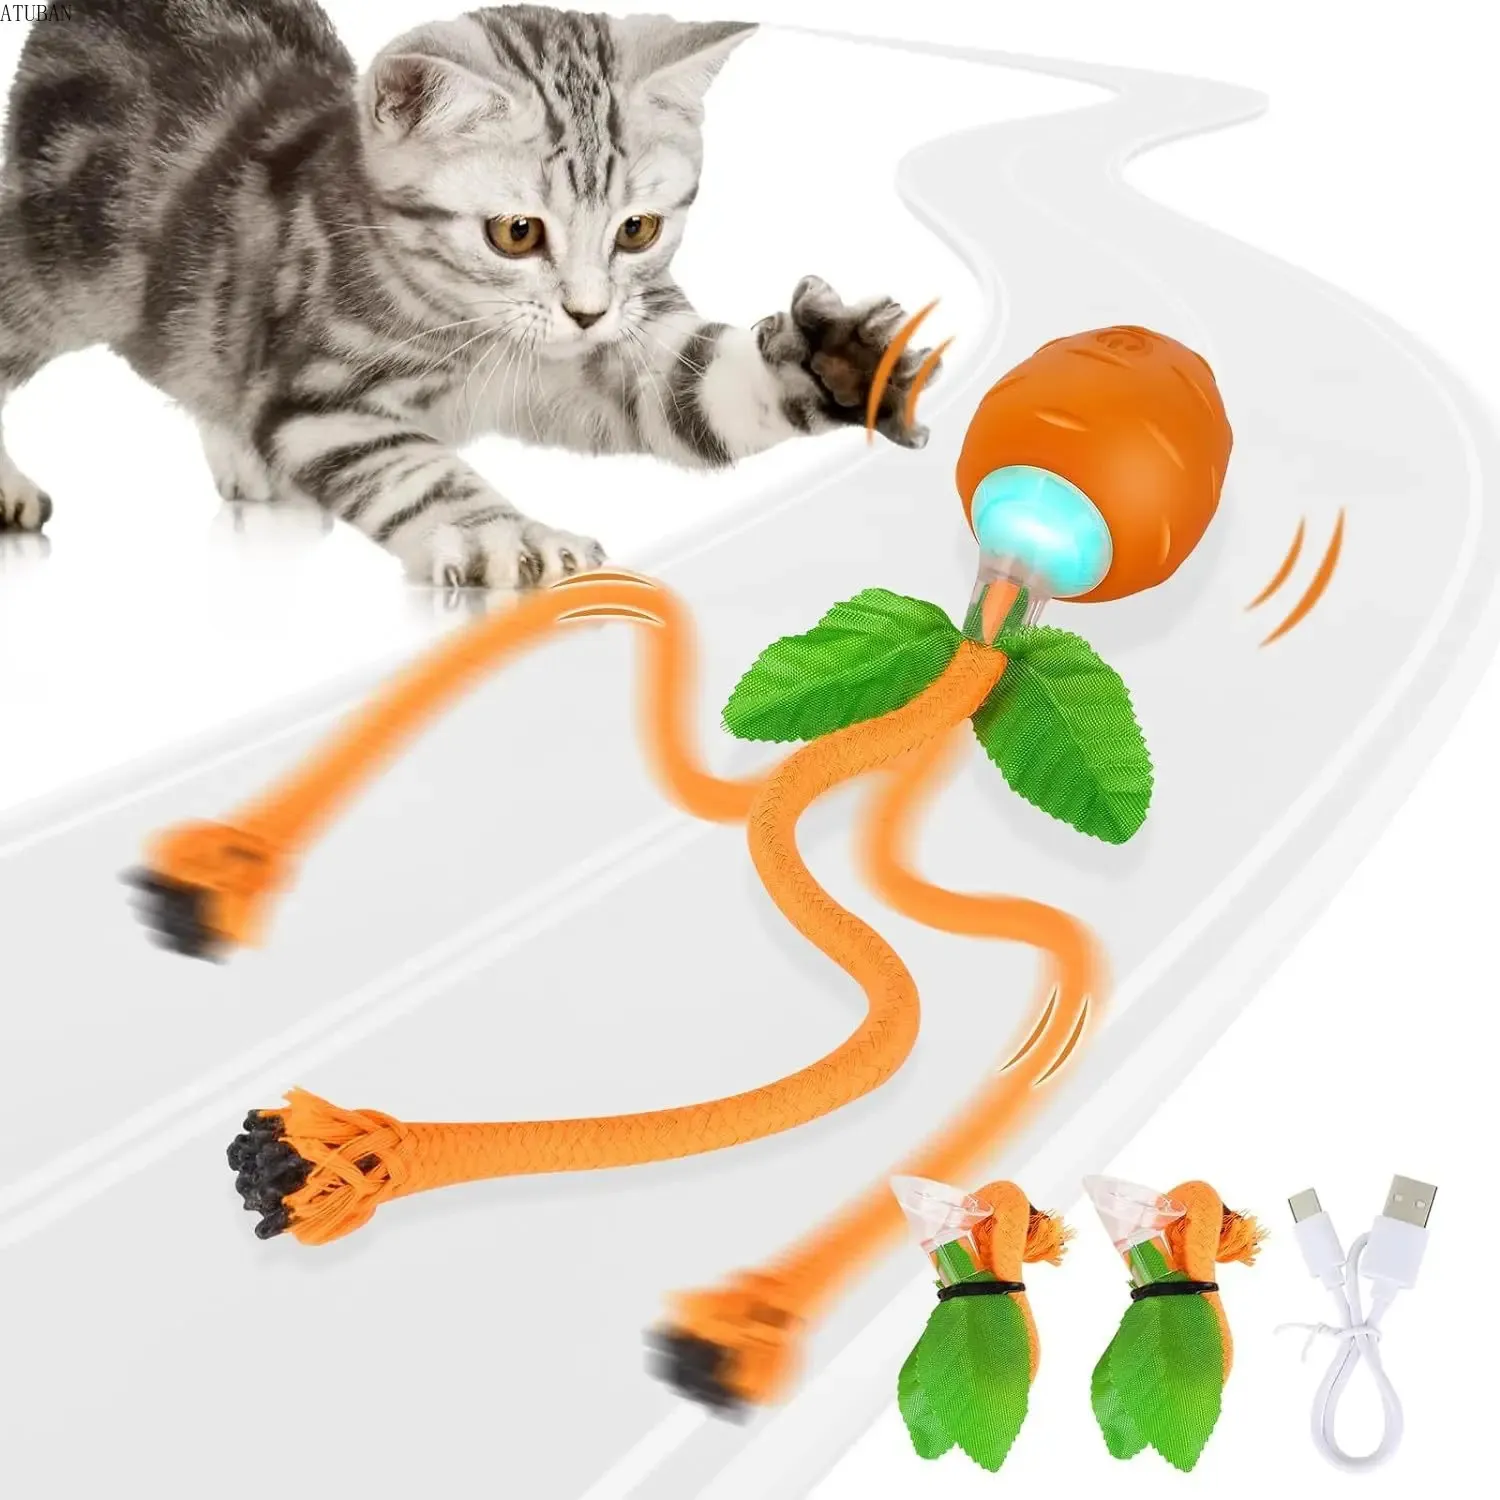 Jouet interactif pour chat, 3 modes de fonctionnement, trajectoire de mouvement irrégulière, jouets pour chats d'intérieur, jeu autonome, stimule les sens des chats, drôle 240103